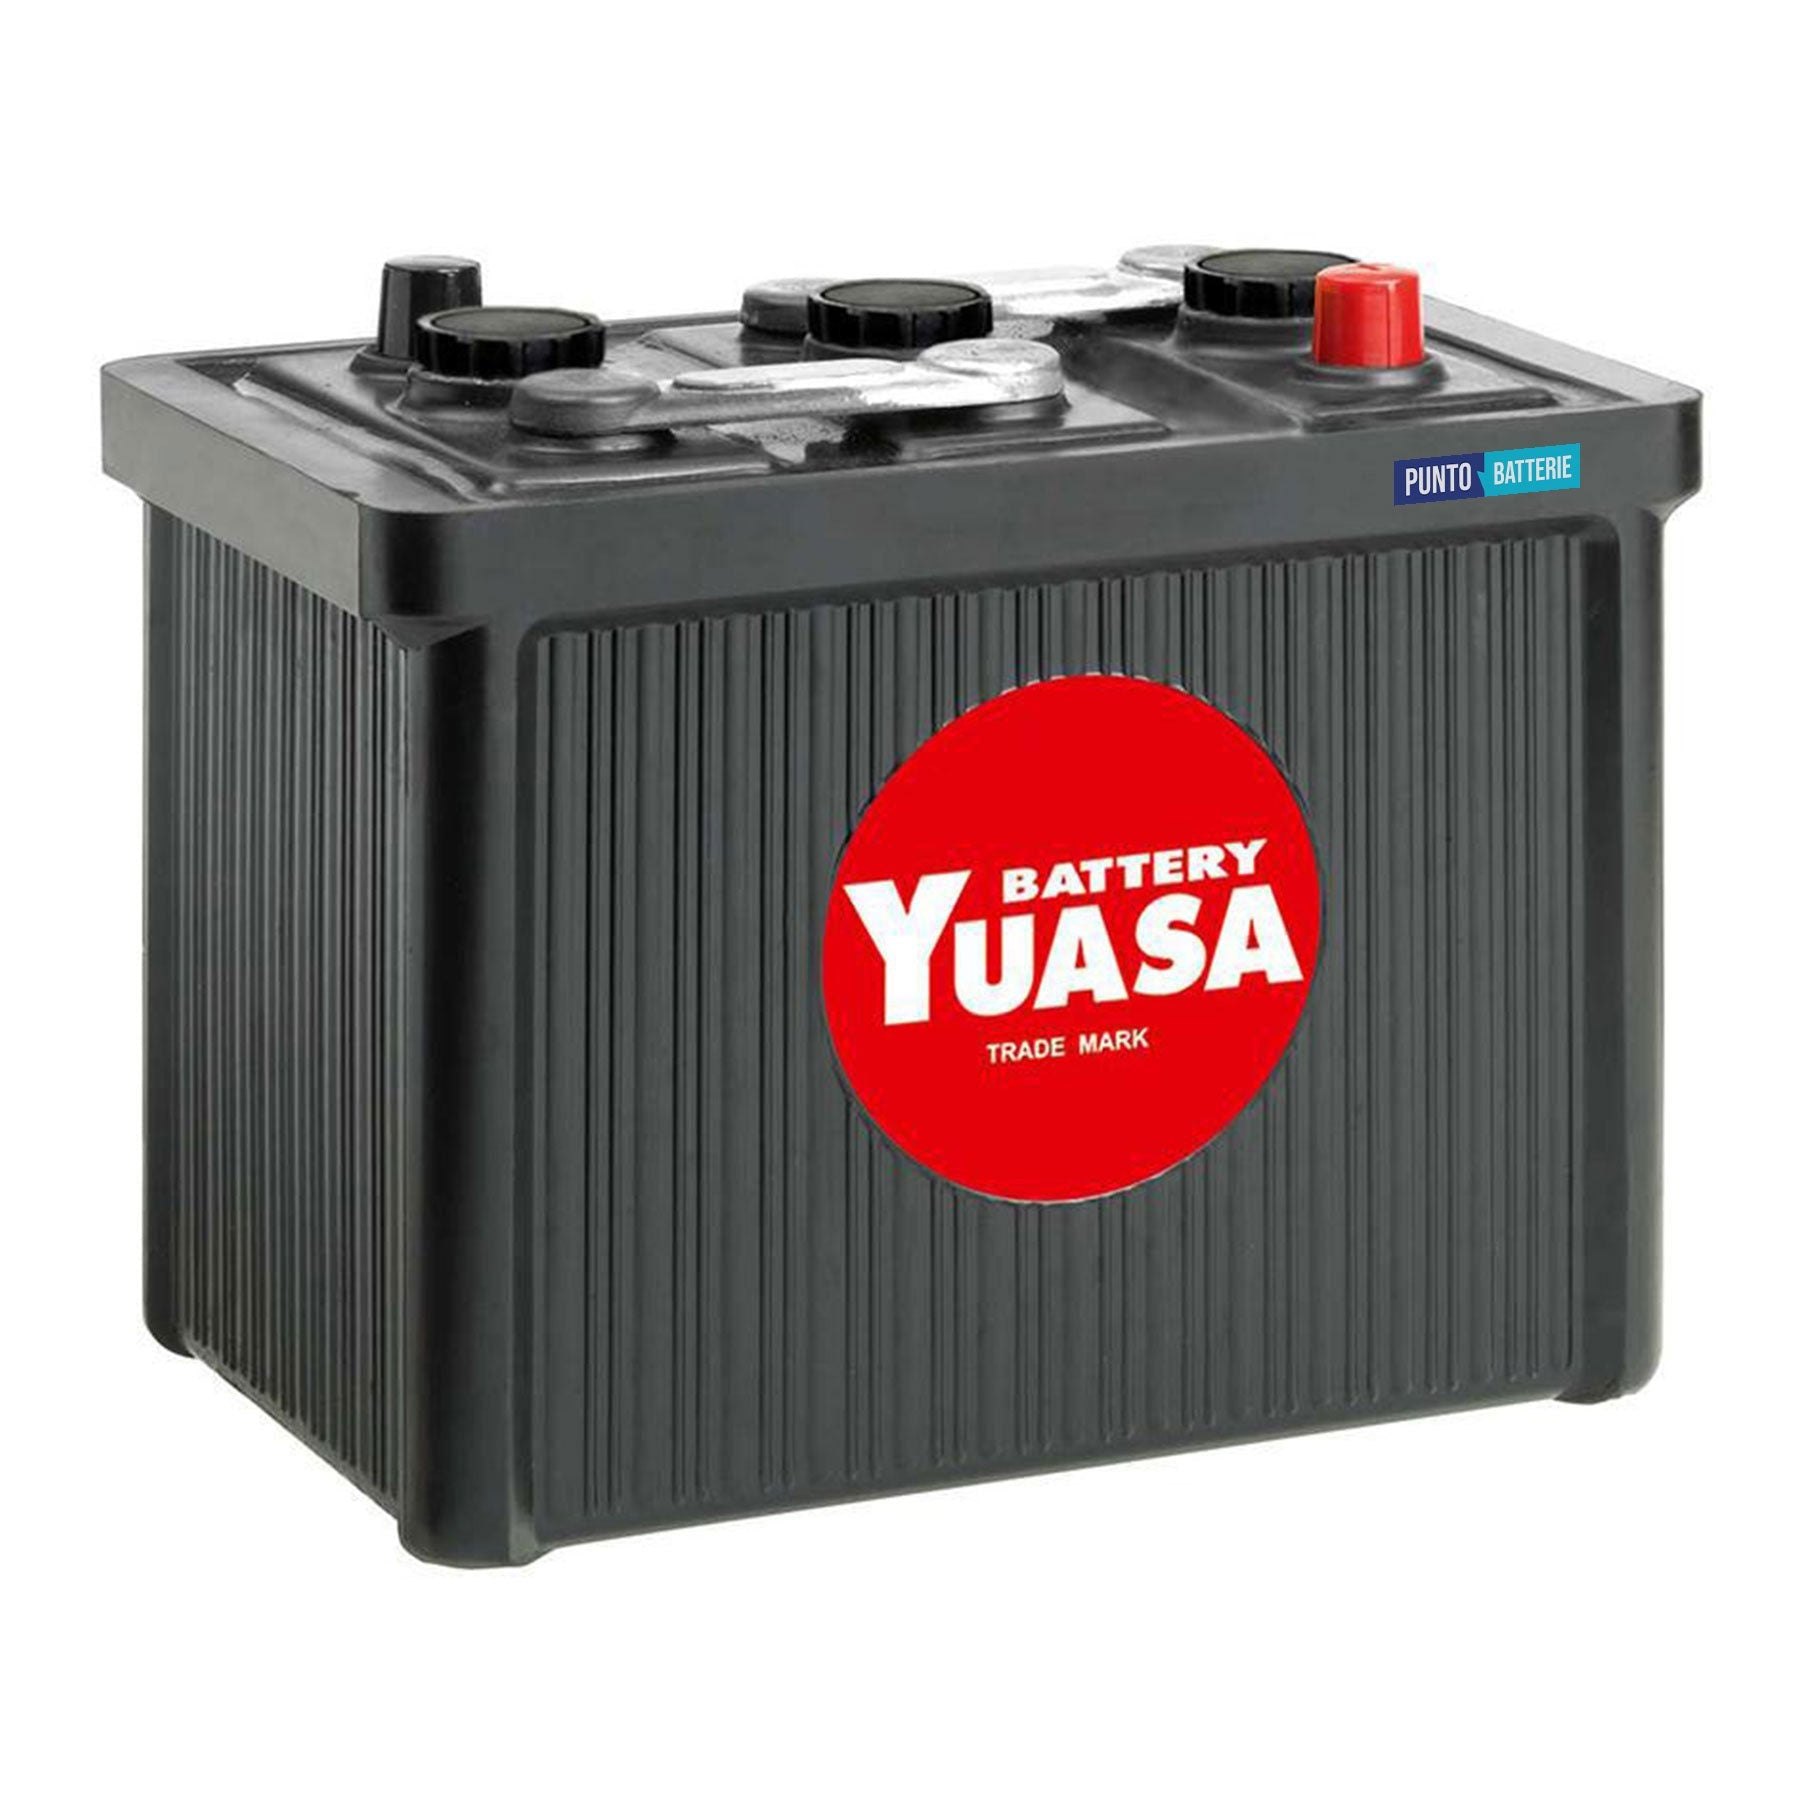 Batteria originale Yuasa Classic e Oldtimer 511, dimensioni 224 x 173 x 217, polo positivo a destra, 6 volt, 105 amperora, 425 ampere. Batteria per veicoli d'epoca.